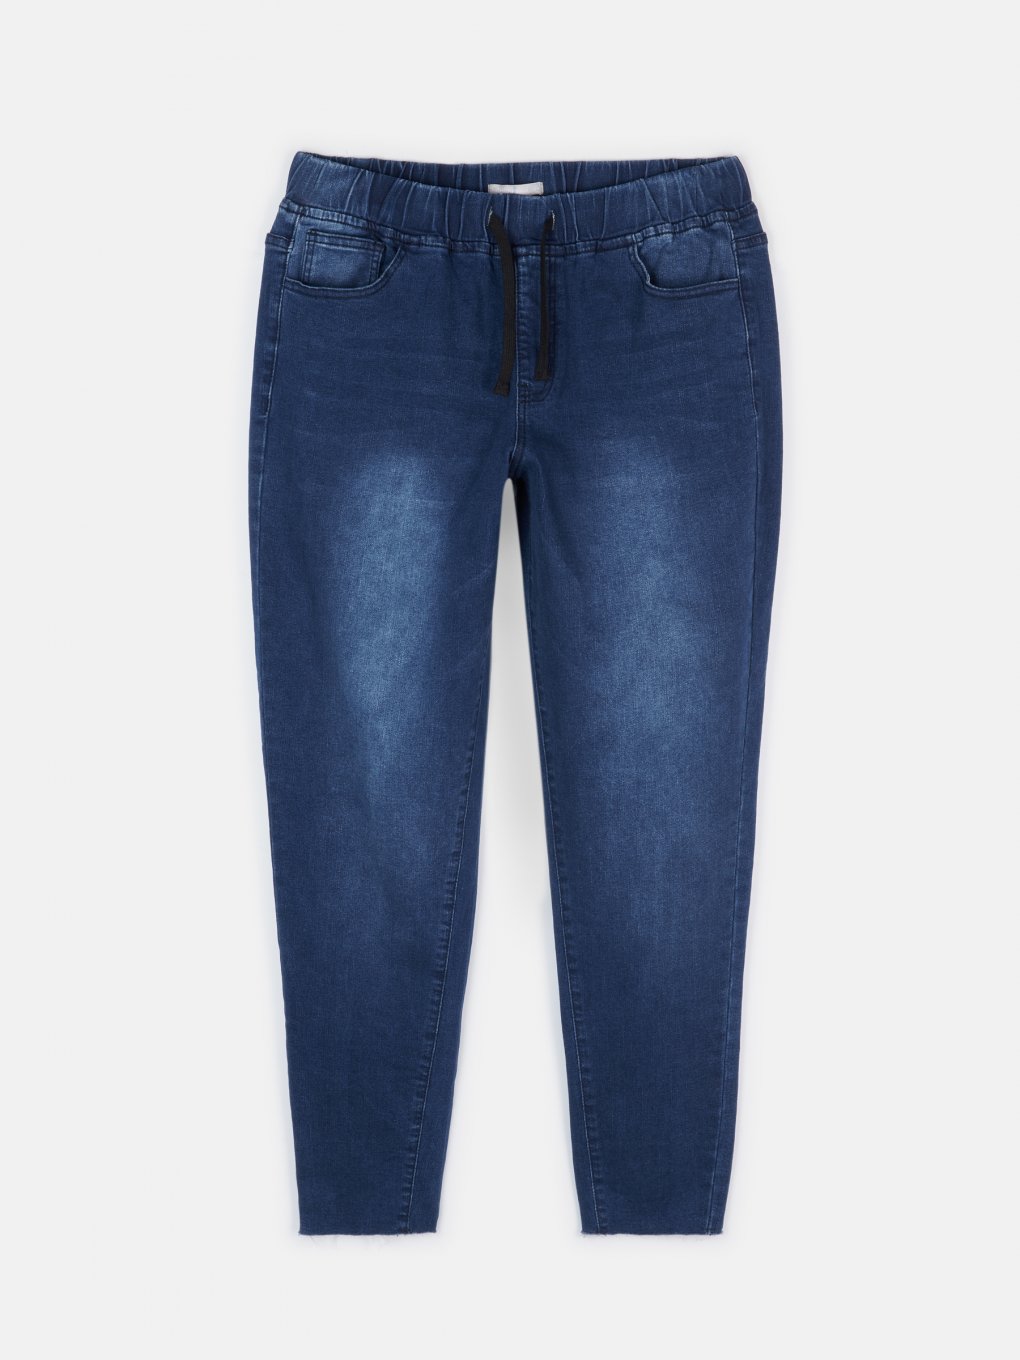 Niebieskie dżinsy o znoszonym wyglądzie z elastycznym paskiem